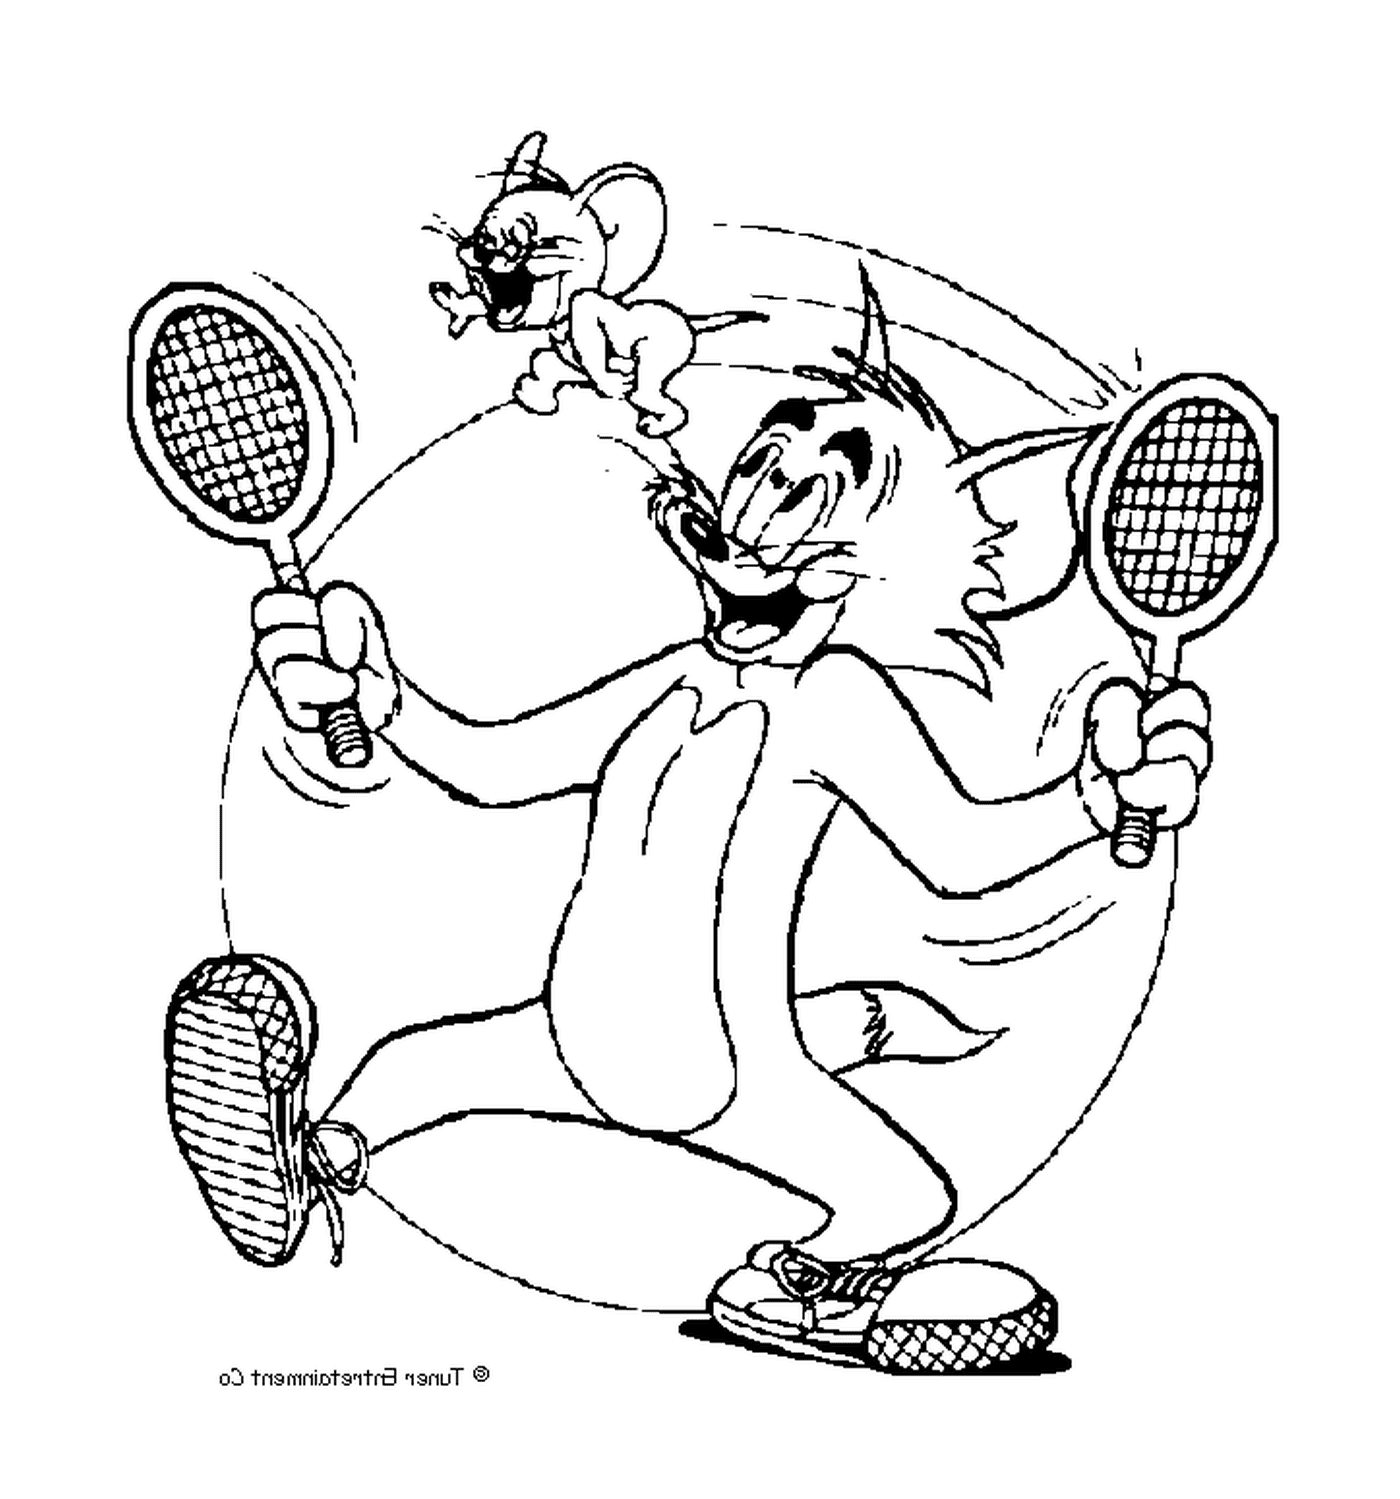  Tom gioca a tennis con Jerry 